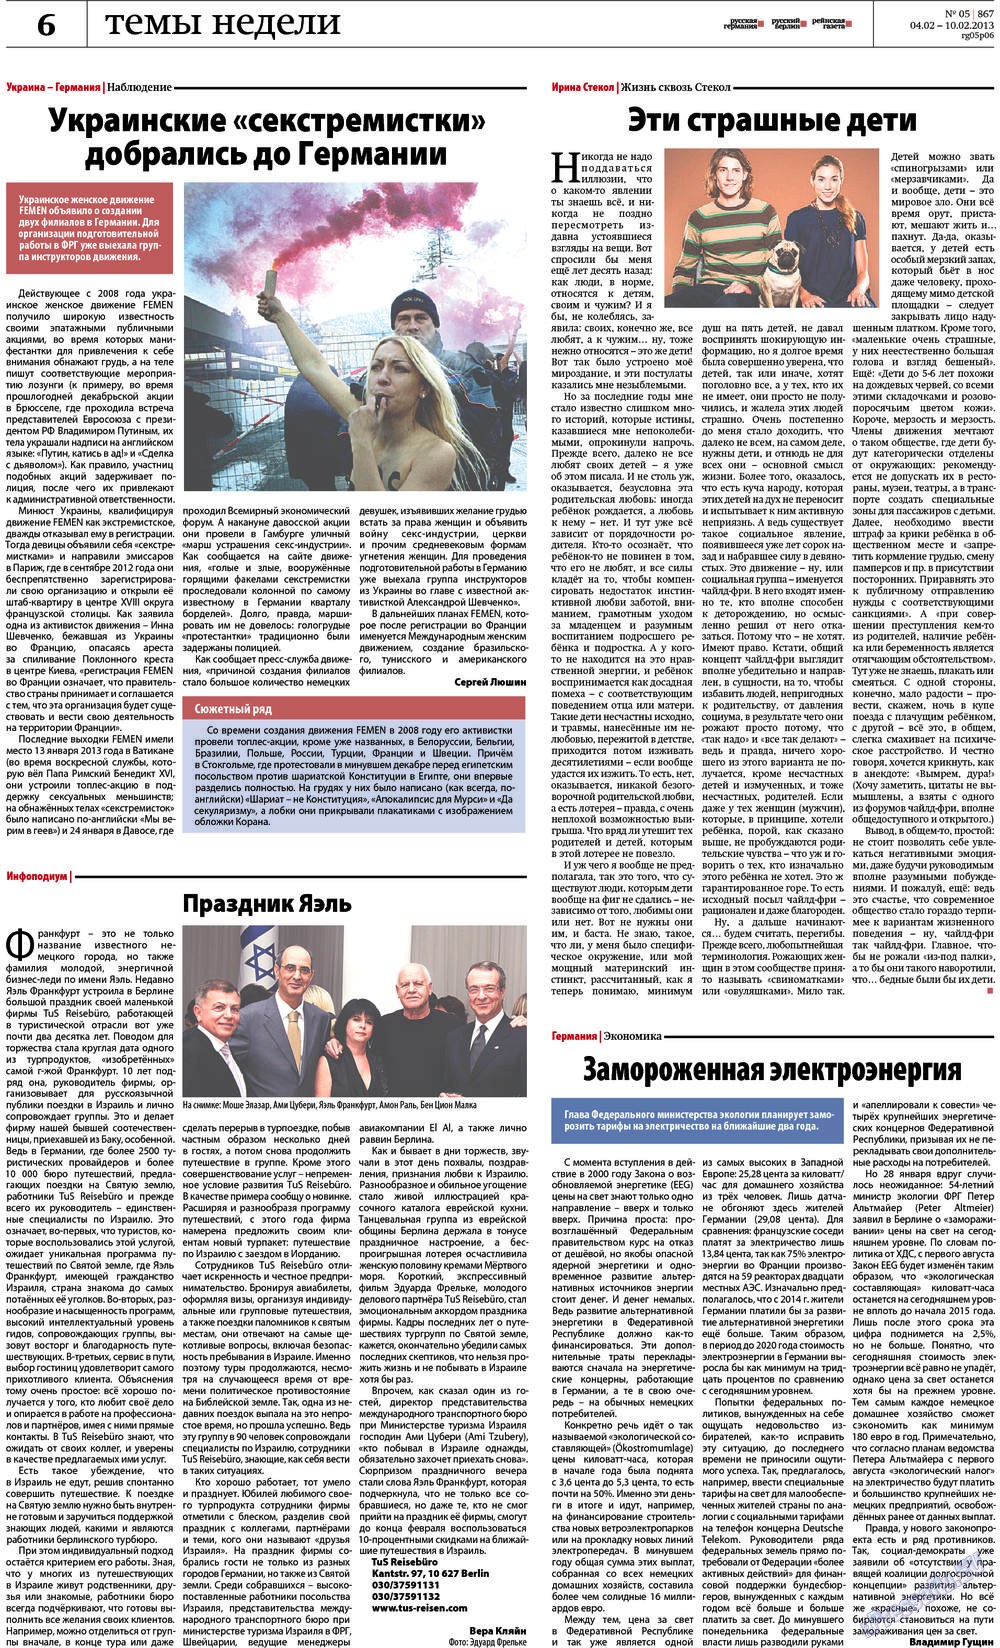 Рейнская газета, газета. 2013 №5 стр.6